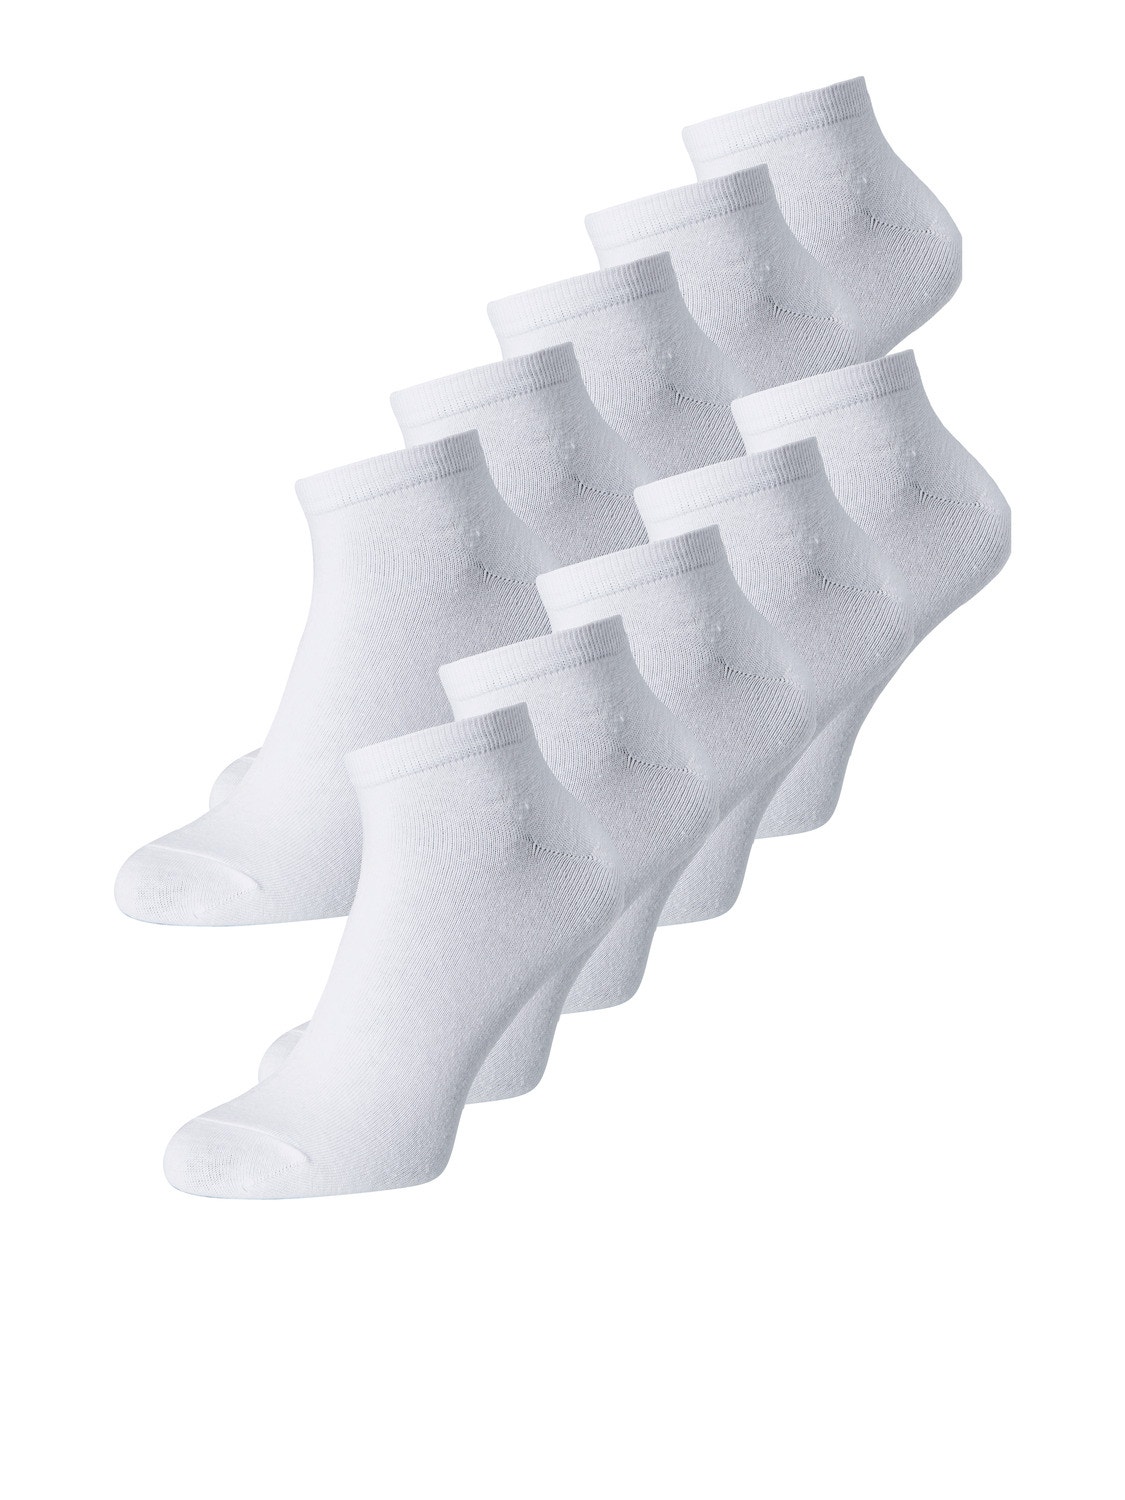 10-pack Socks